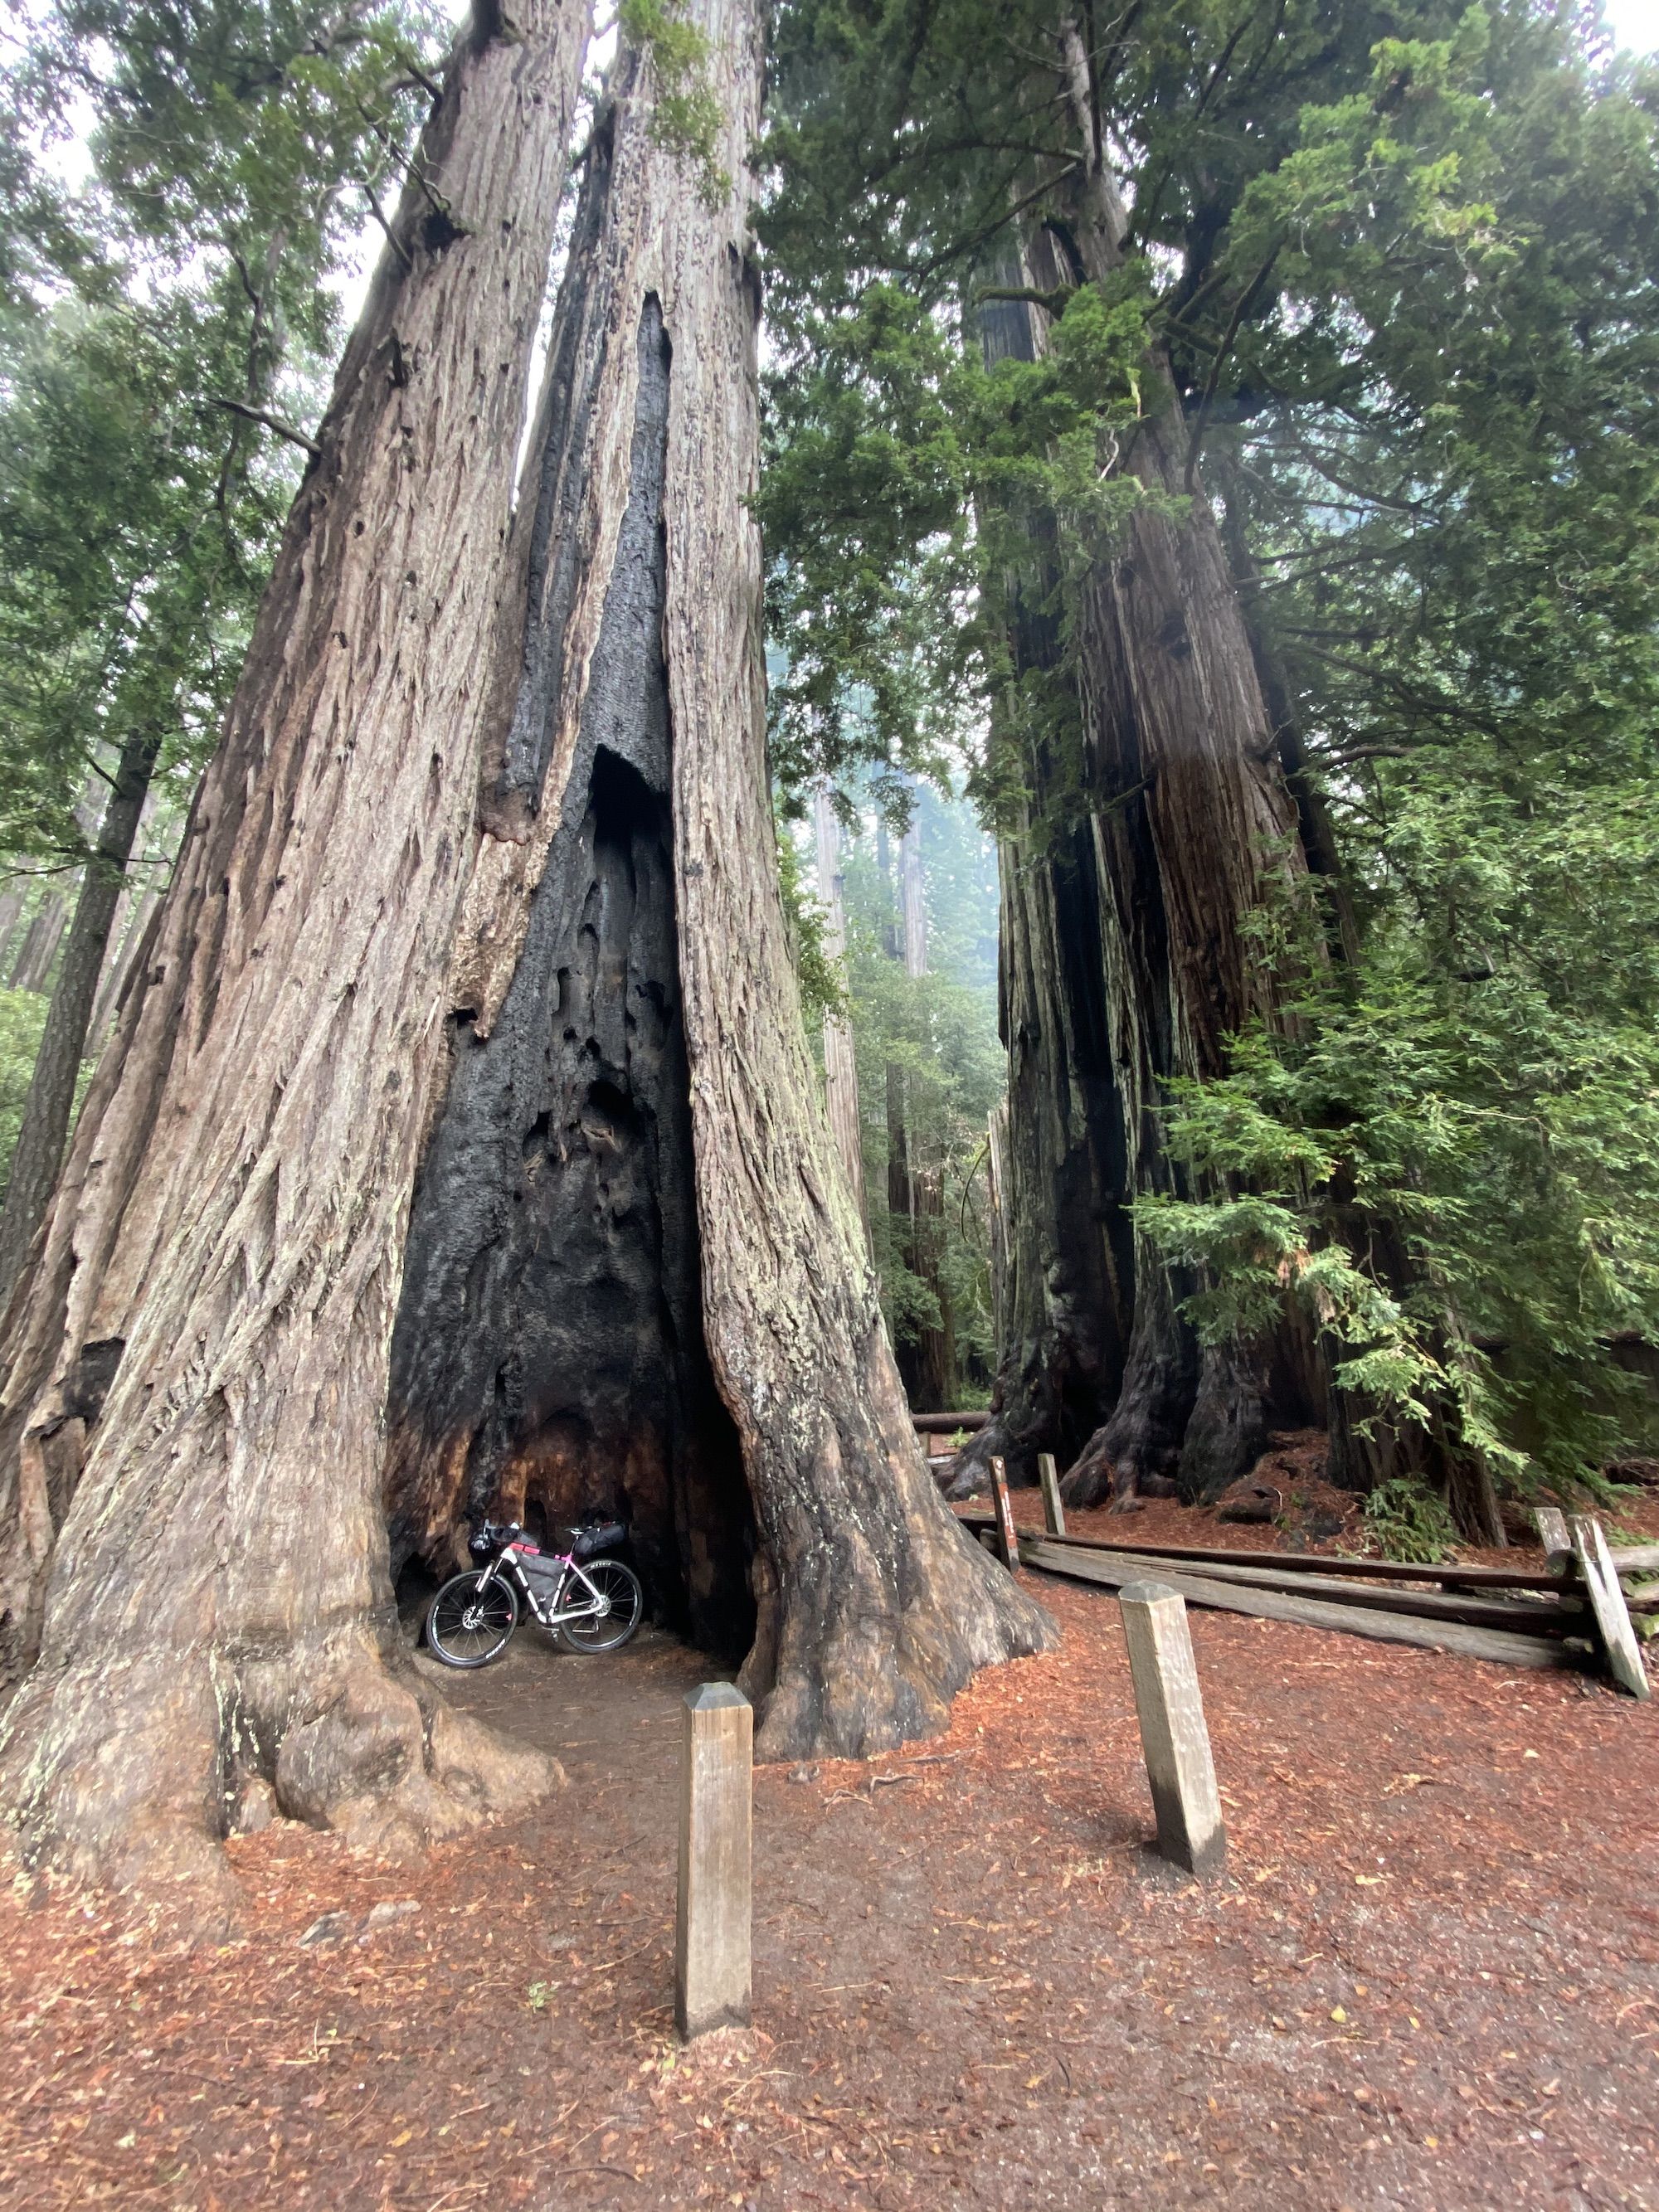 A bike inside a large redwood tree